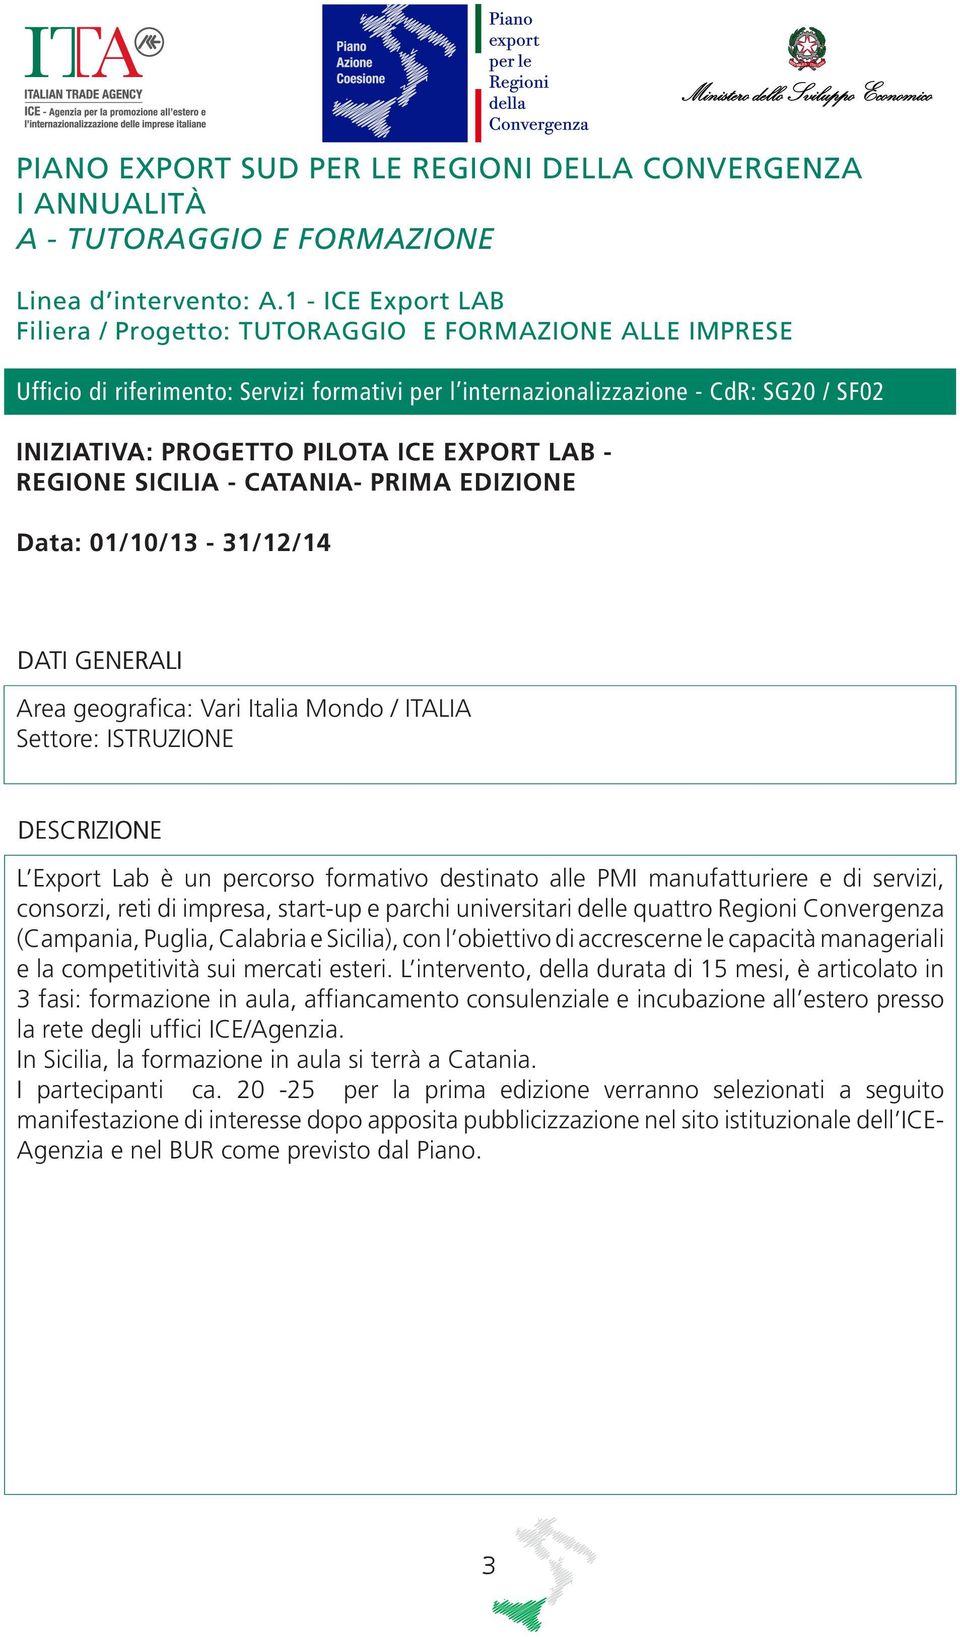 EXPORT LAB - REGIONE SICILIA - CATANIA- PRIMA EDIZIONE Data: 01/10/13-31/12/14 Area geografica: Vari Italia Mondo / ITALIA Settore: ISTRUZIONE L Export Lab è un percorso formativo destinato alle PMI